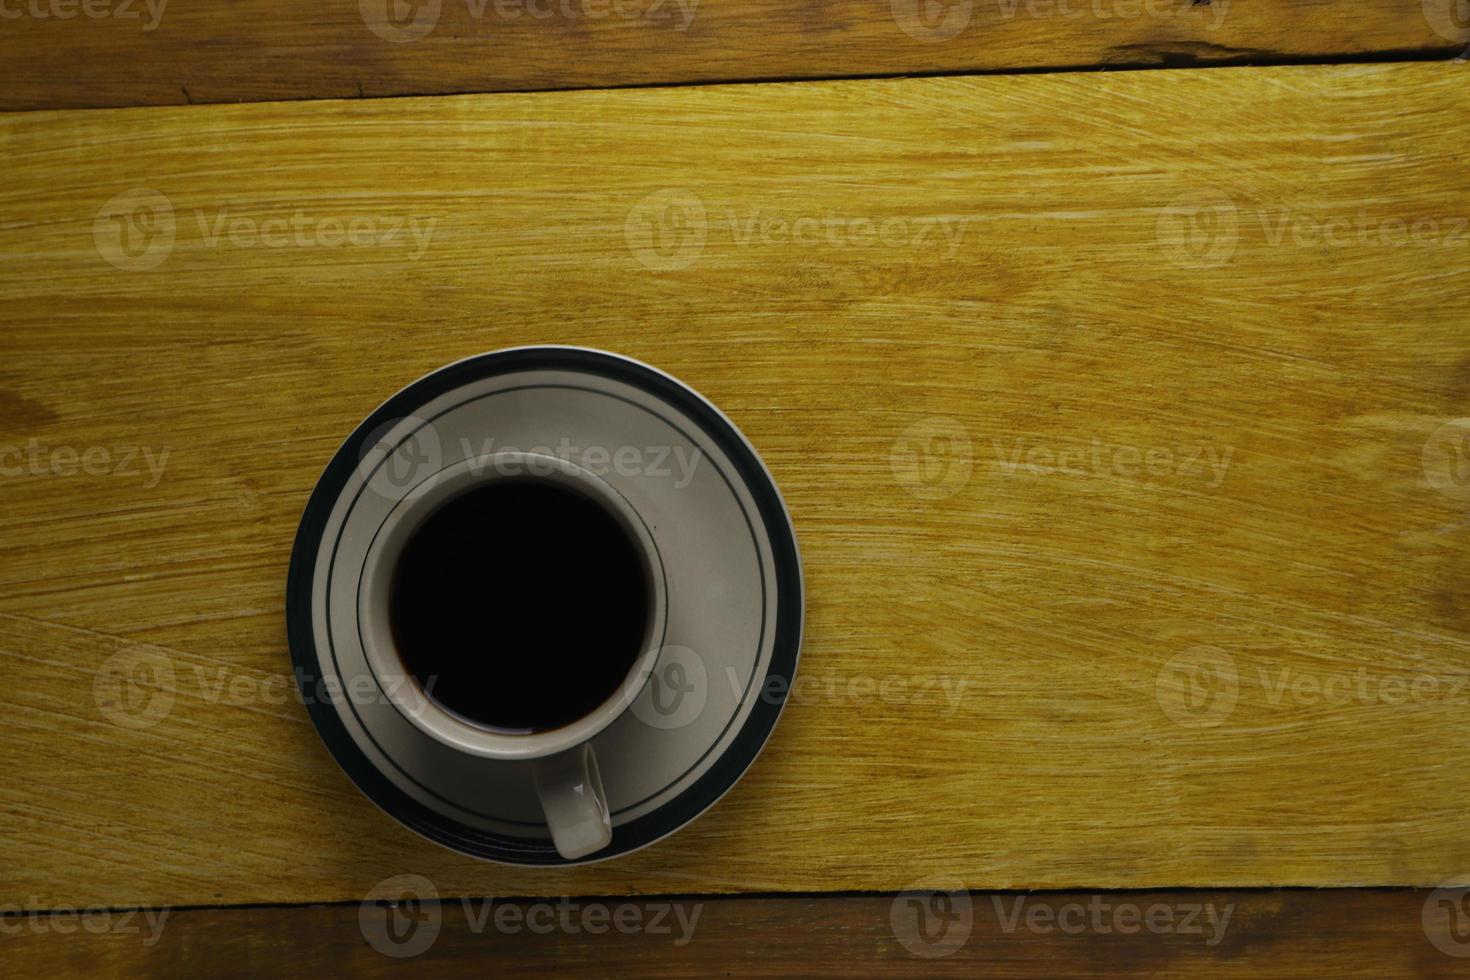 tasse de café noir sur un fond en bois. zone de fond photo